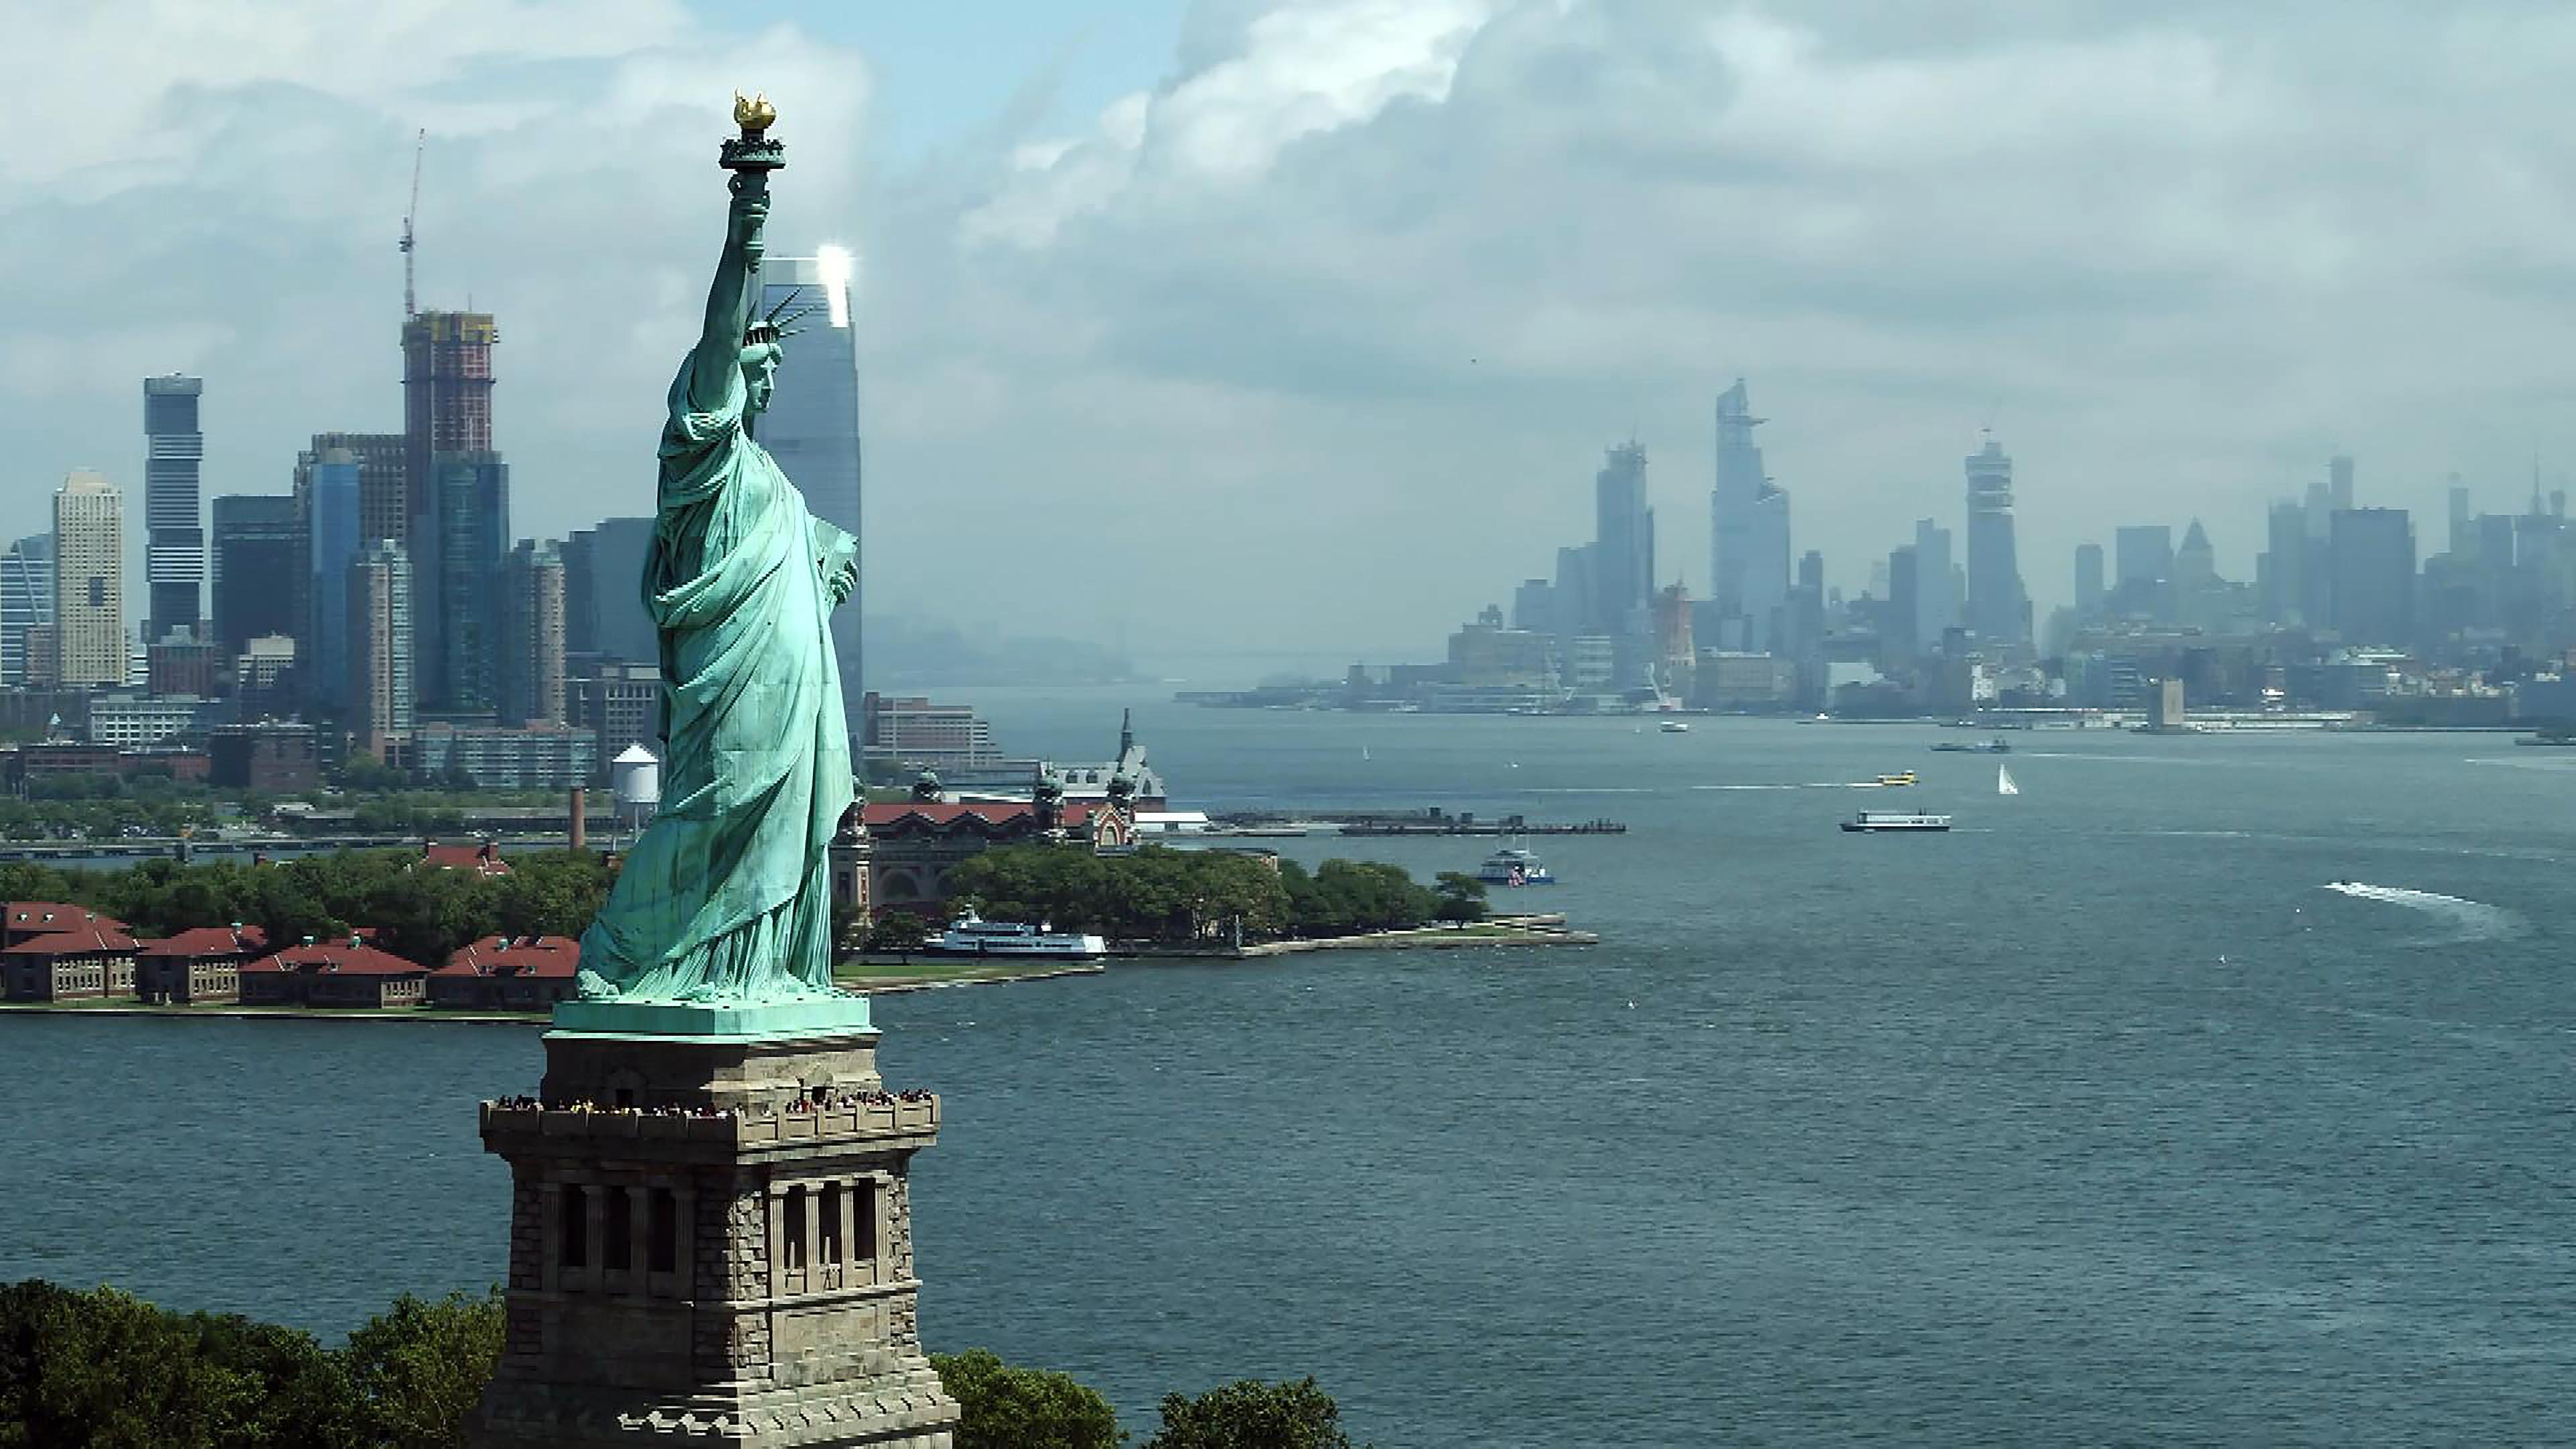 "Eiffels Superbauten - Giganten aus Stahl und Eisen": Vorne links, die Freiheitstatue von New York City, Wasser mit Booten, im Hintergrund die Skyline der Stadt.